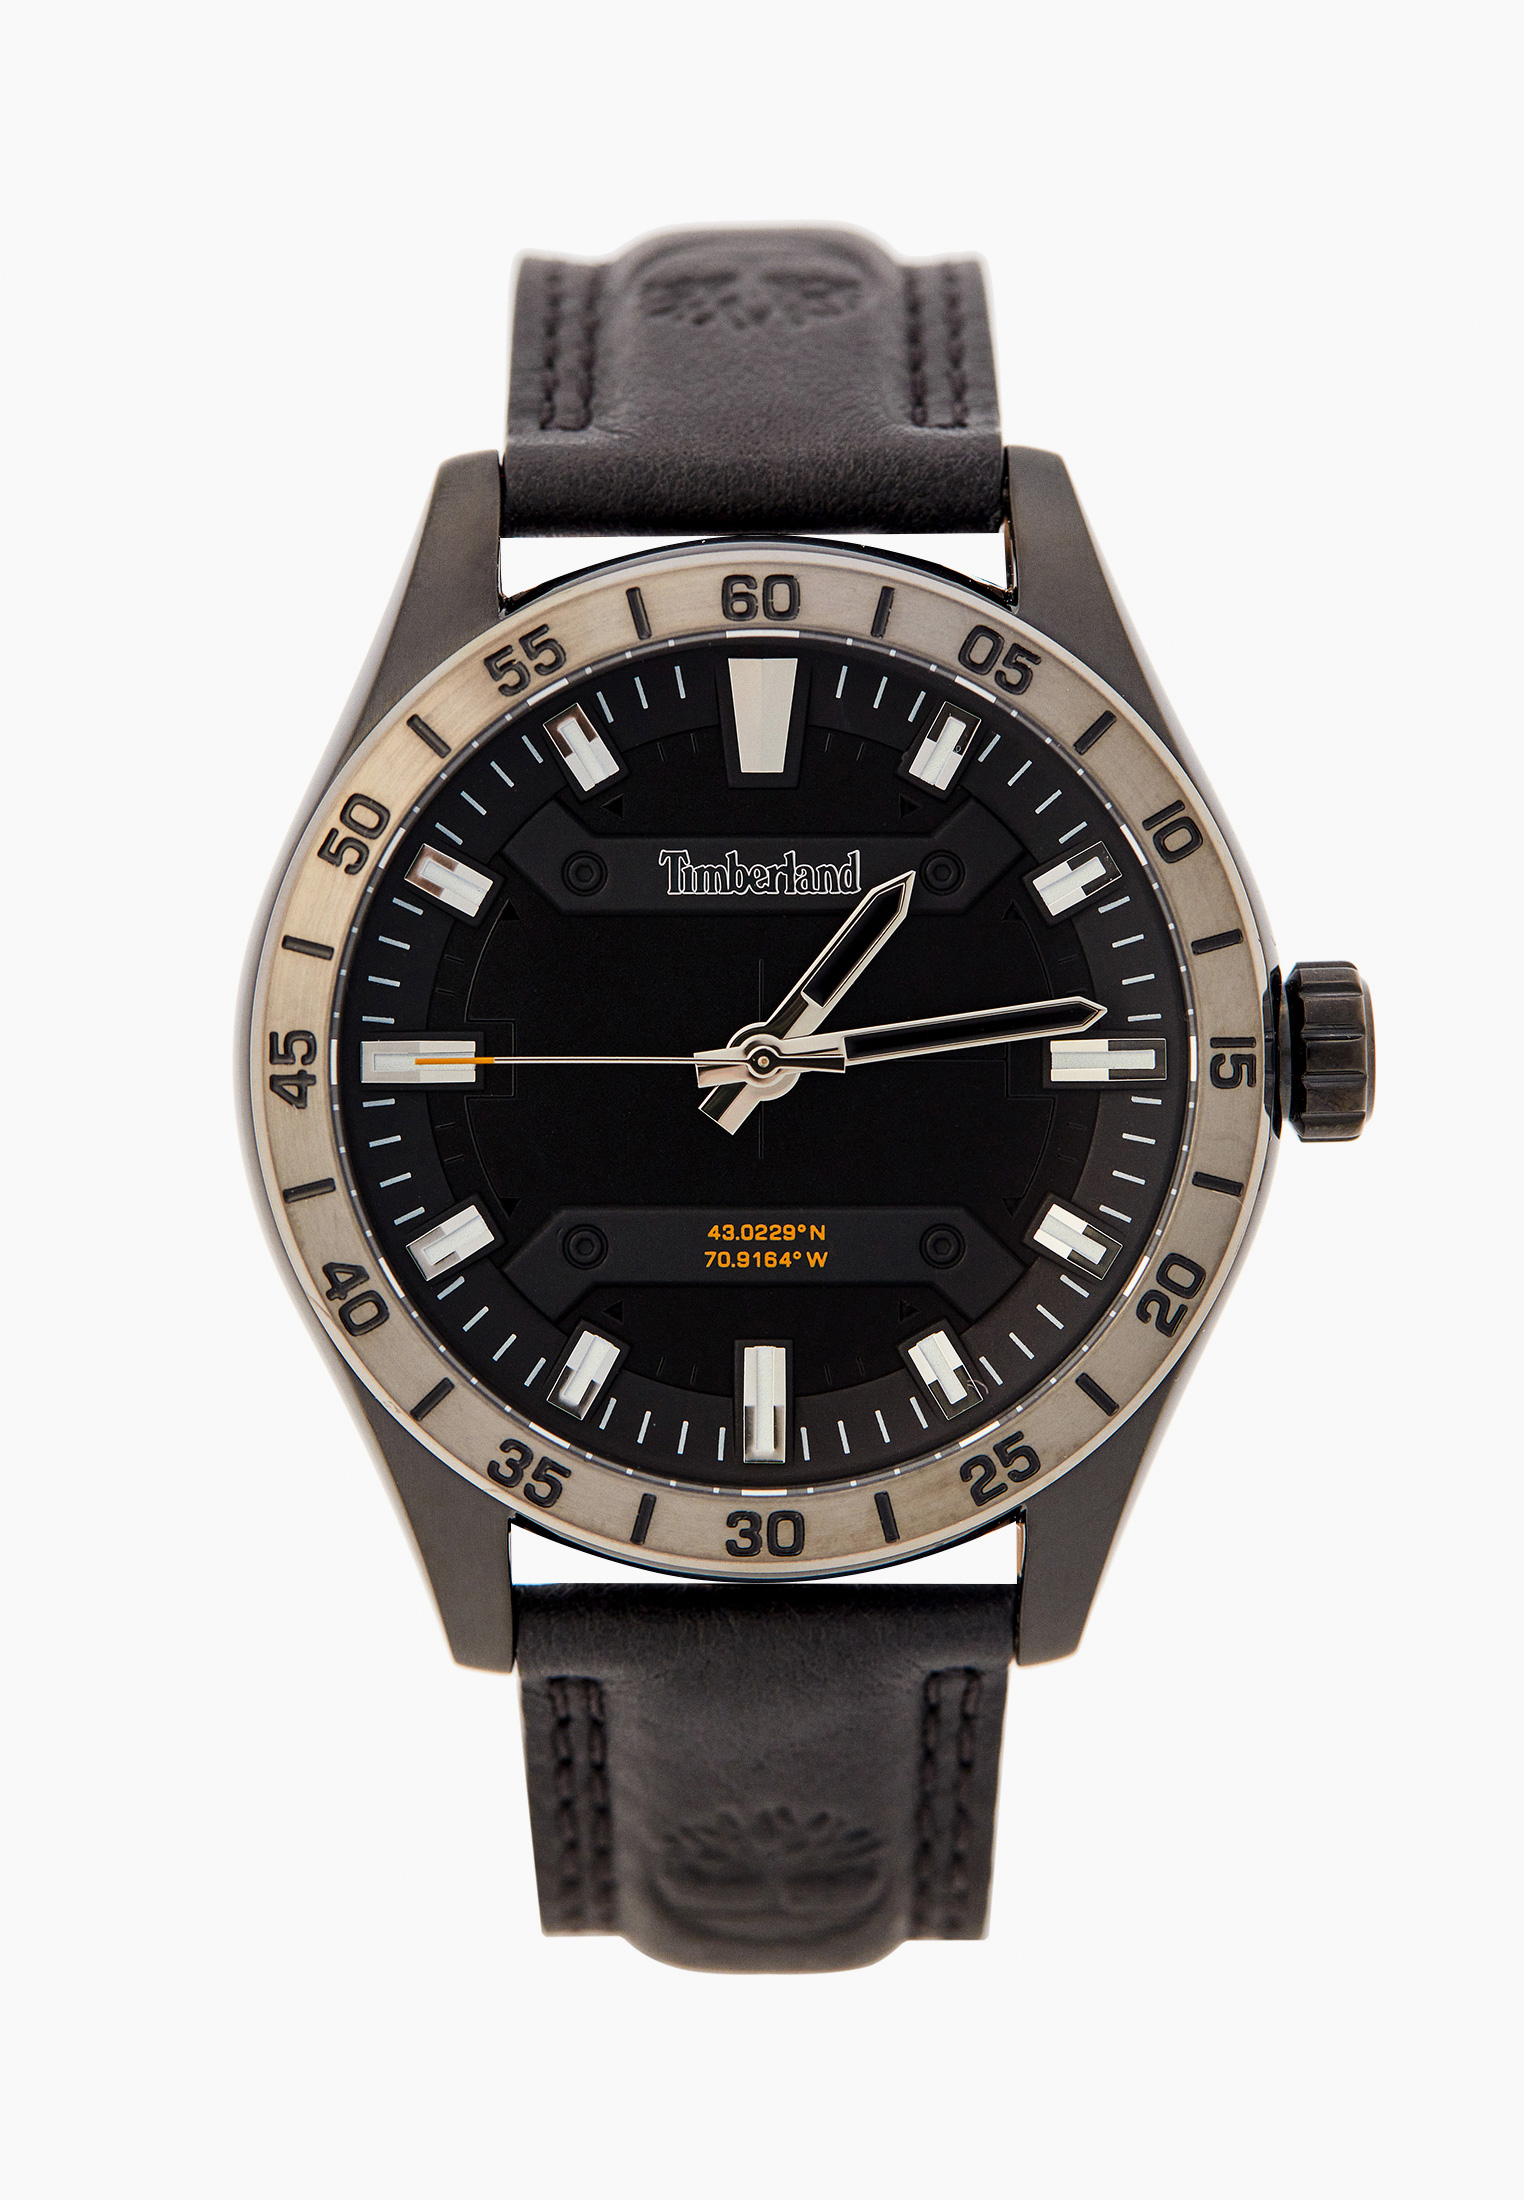 Мужские часы Timberland (Тимберленд) TDWGA2201203 купить за 11620 руб.